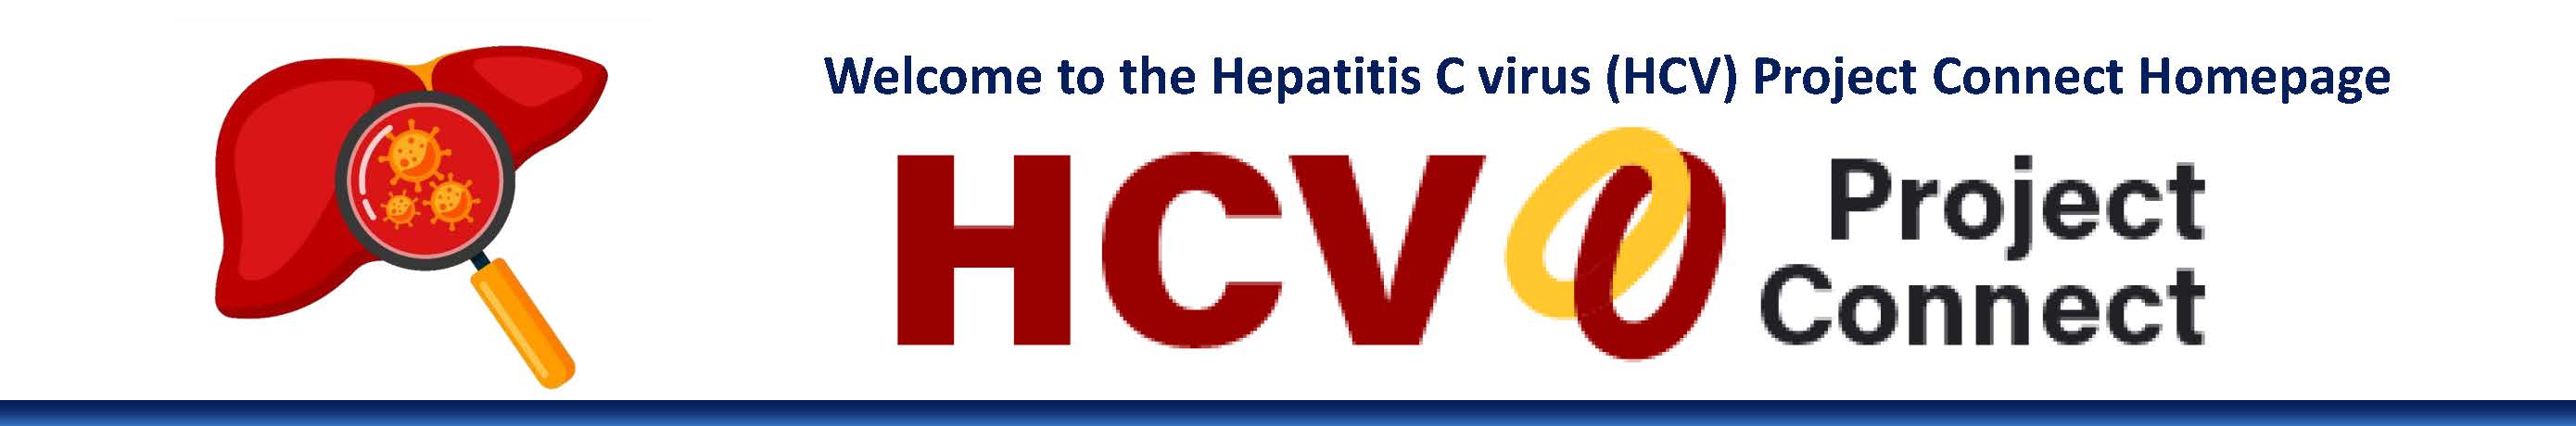 HCV logo